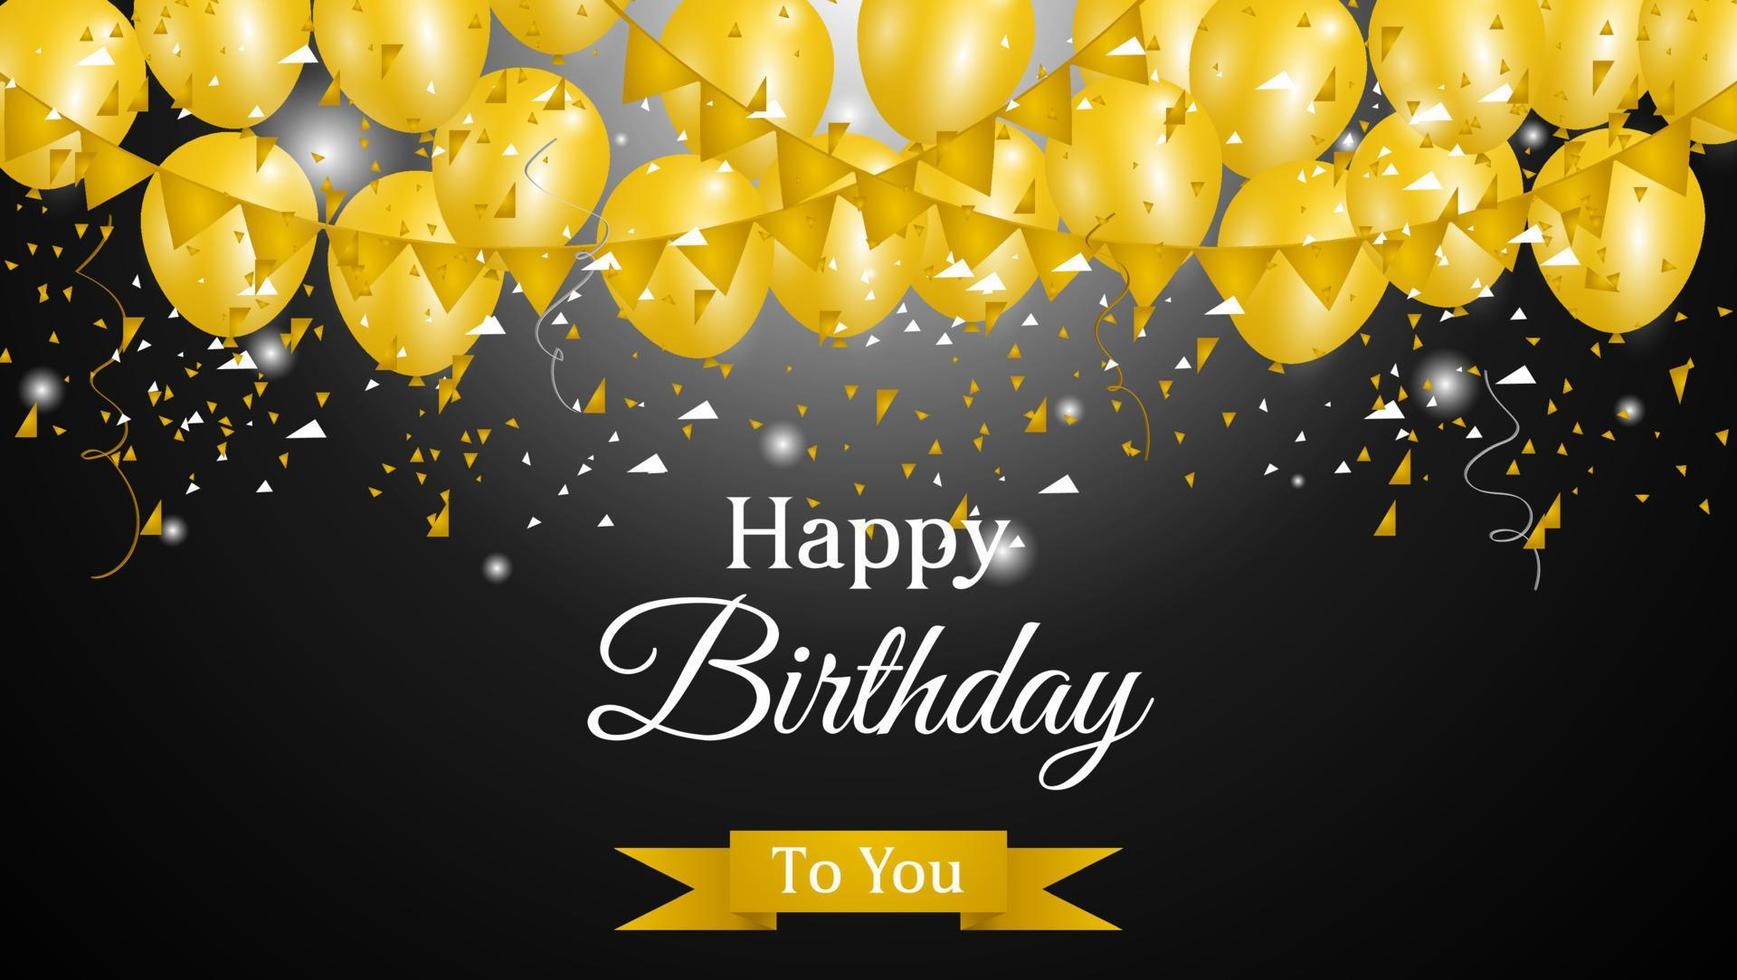 fundo de feliz aniversário com balões dourados e confetes em fundo preto. adequado para cartão, banner, etc. ilustração vetorial vetor